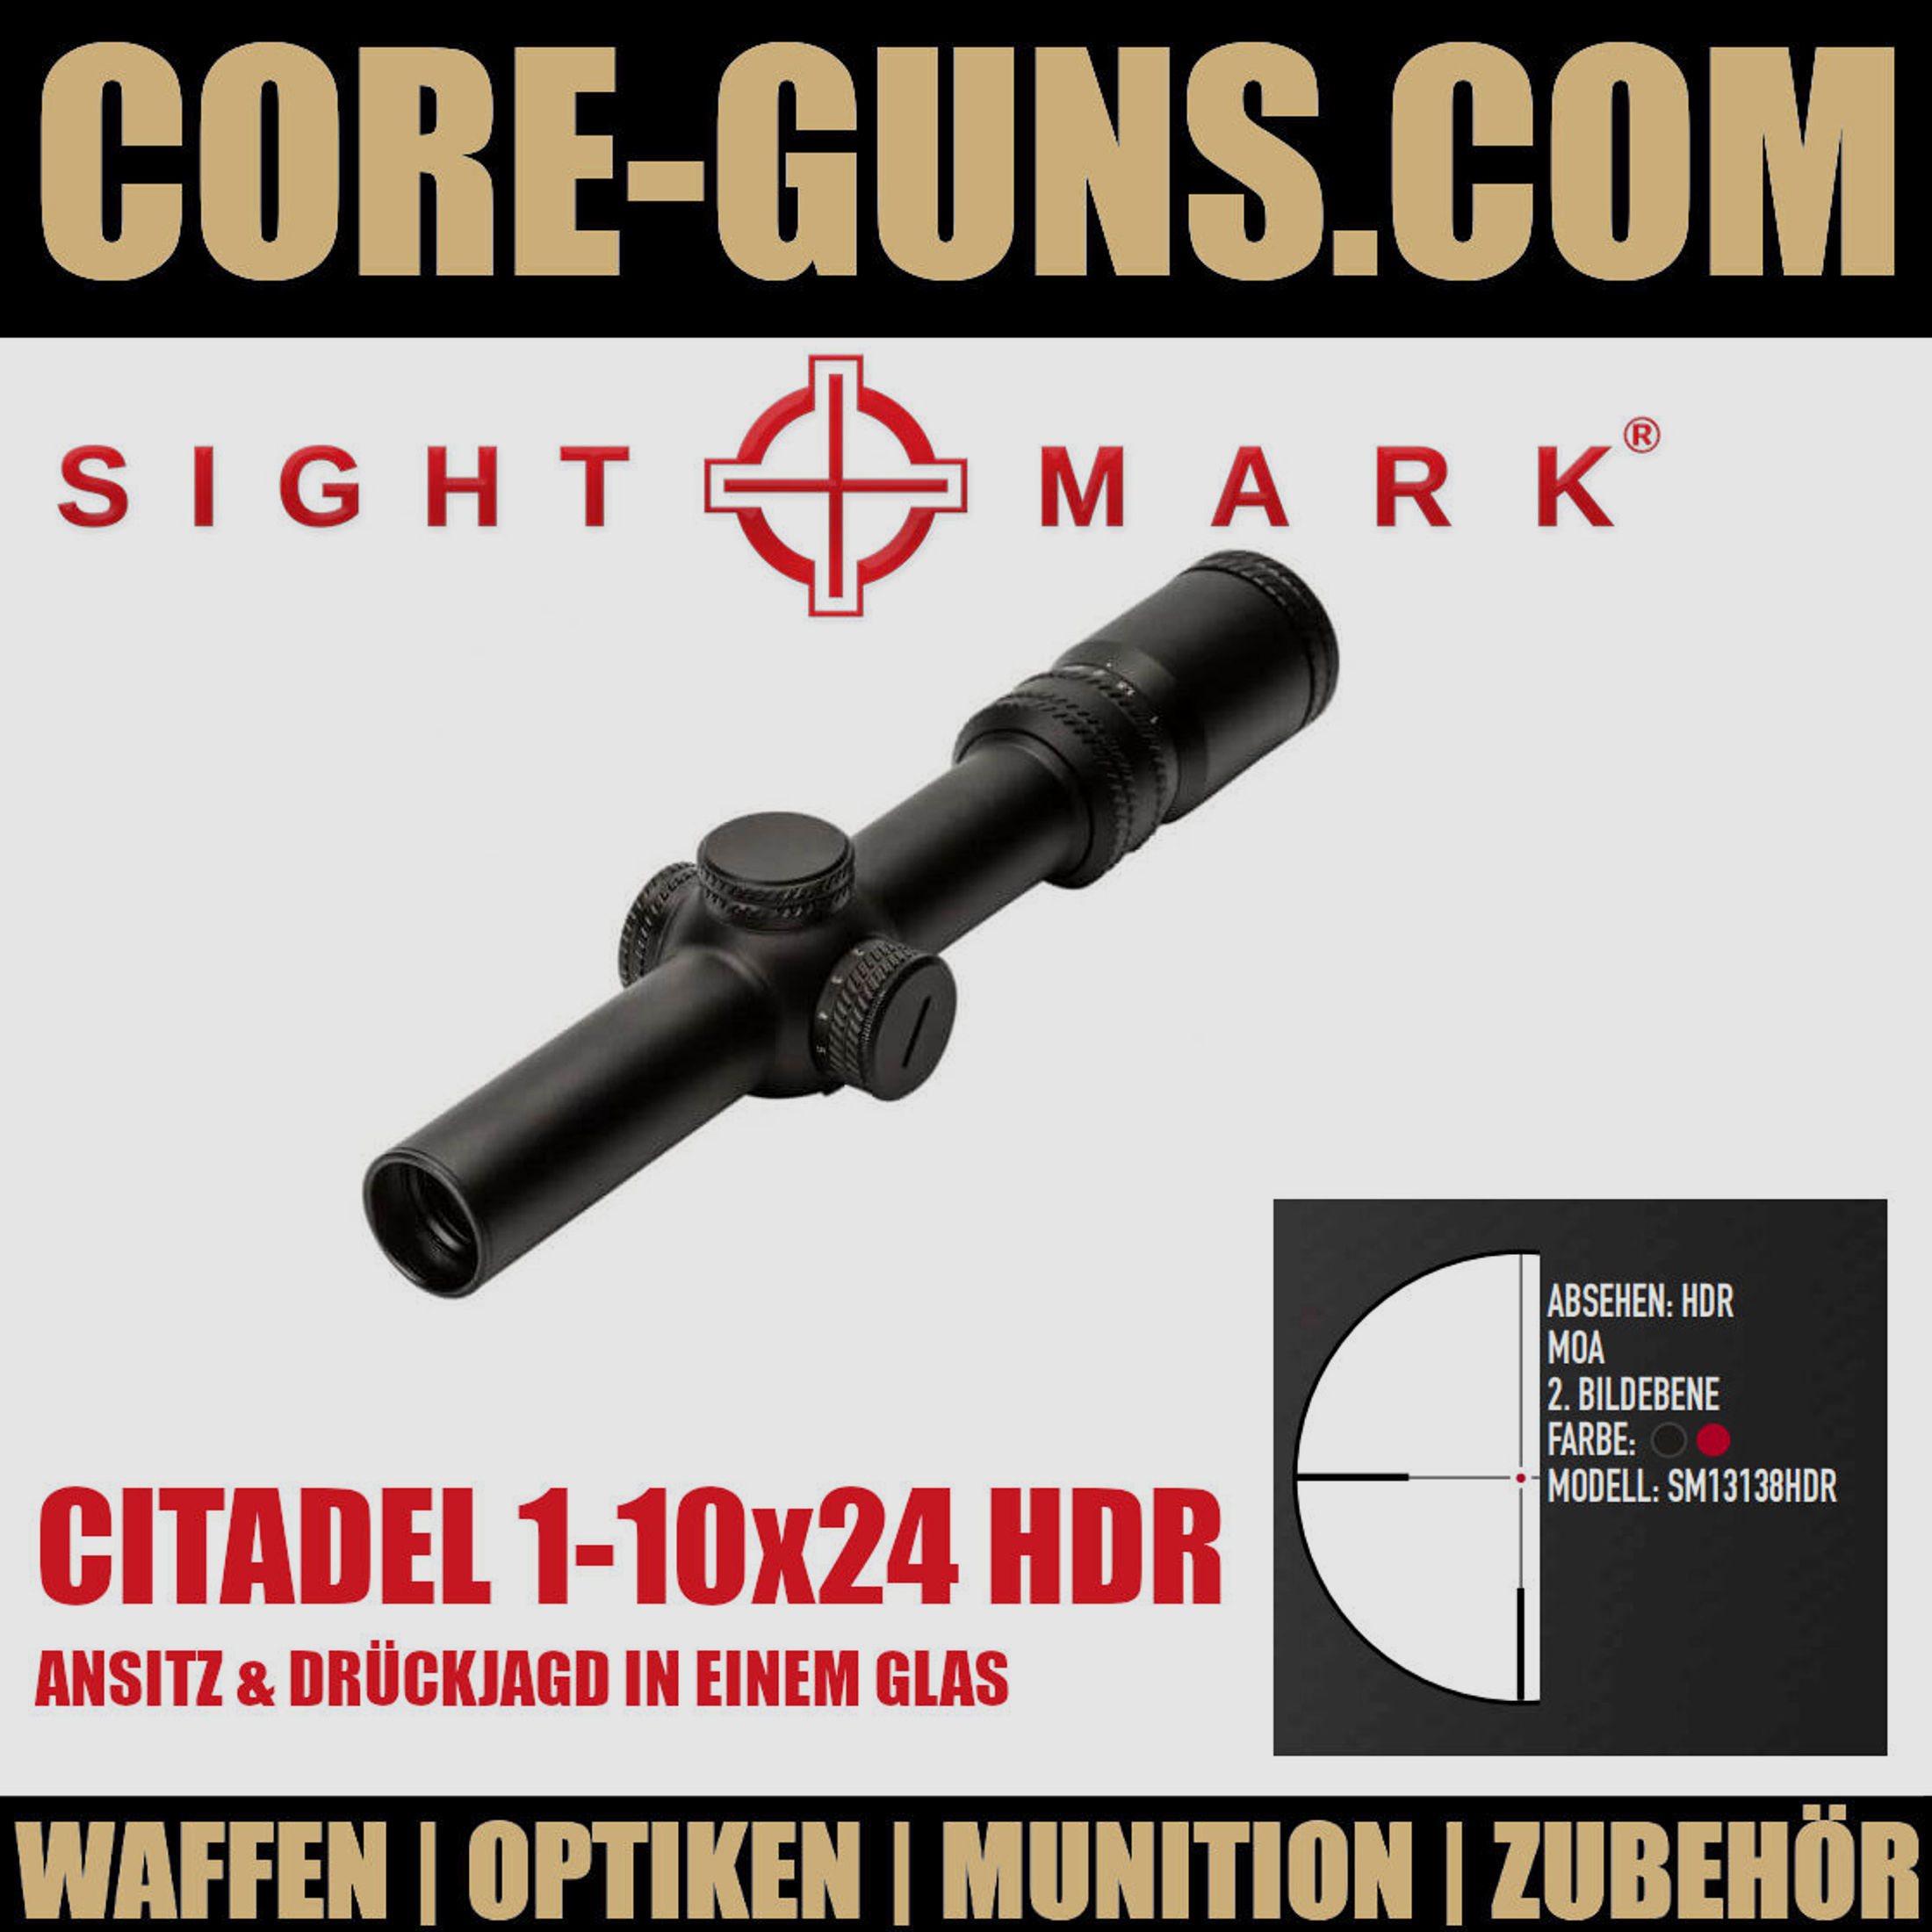 Sightmark Citadel 1-10x24 HDR Abshehen Sport und Jagd in einem Glas	 Sightmark Citadel 1-10x24 Drückjagd und Ansitz in einer Zieloptik